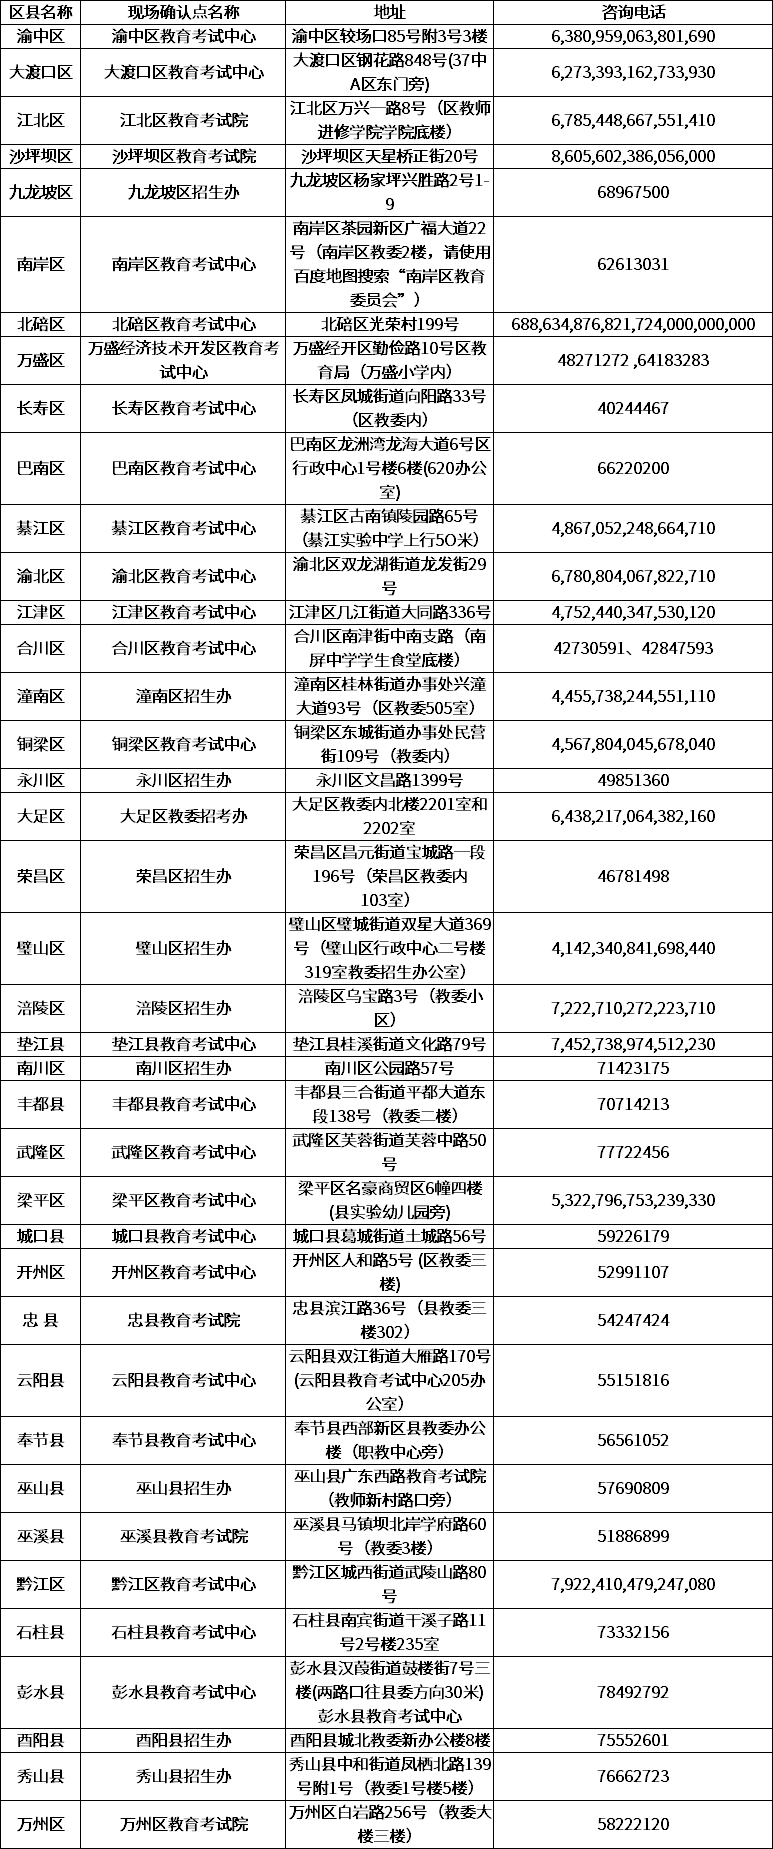 2020年重庆成人高考各区县现场确认点地址及咨询电话.png